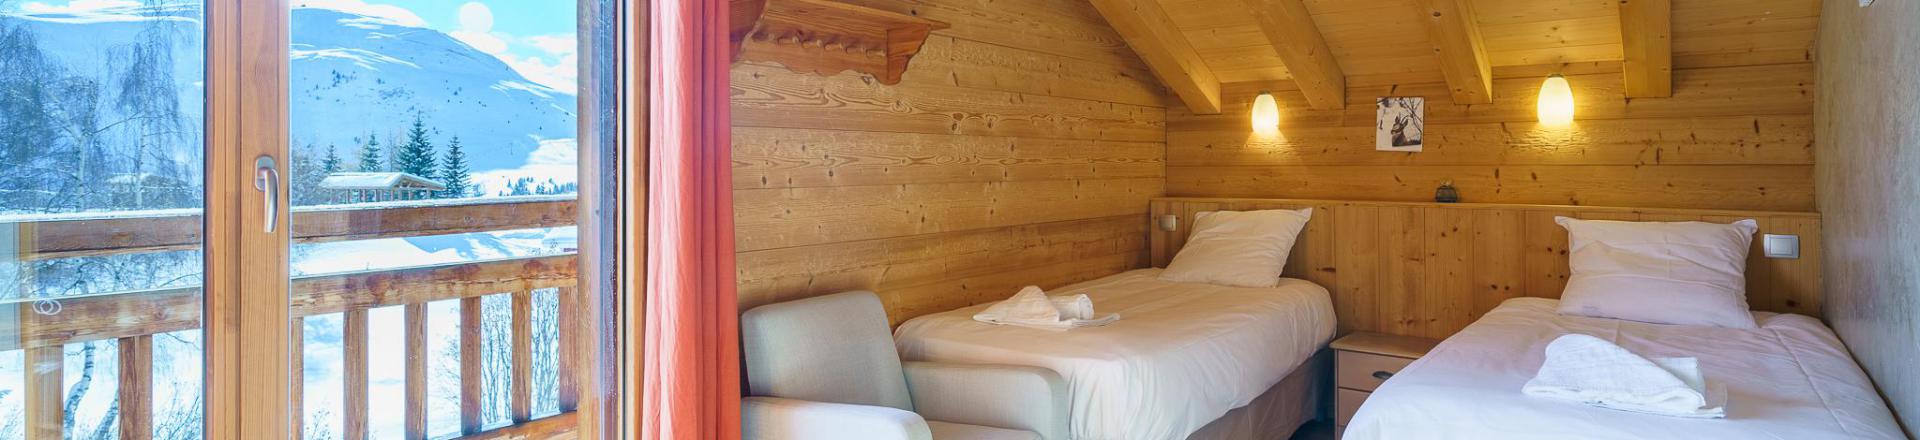 Location au ski Chalet triplex 5 pièces 8 personnes (Friandise) - Chalets Les Balcons du Golf - Alpe d'Huez - Chambre mansardée